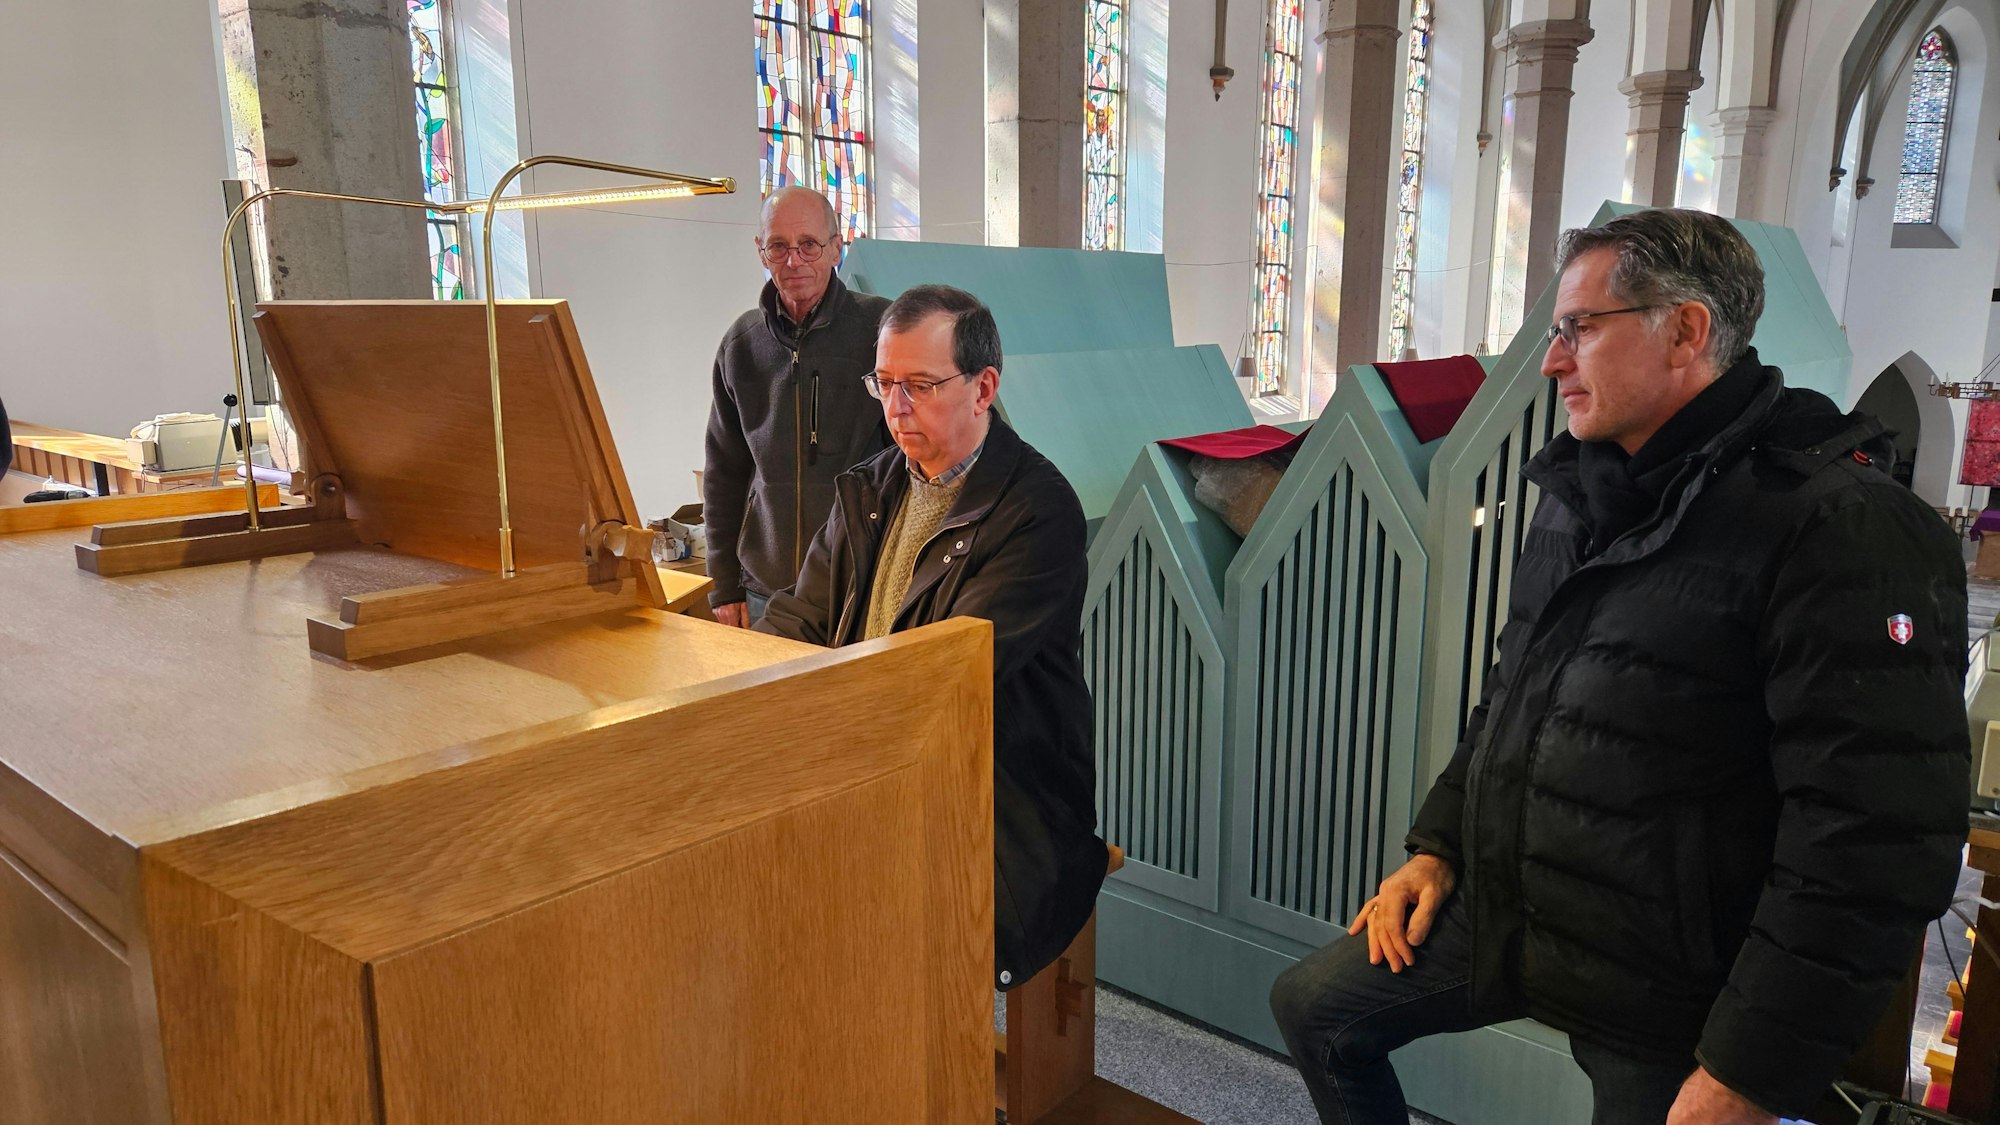 Karl-Wilhelm Jansen und Frank Weimbs stehen neben dem Spieltisch, an dem Organist Andreas Warler sitzt und spielt.